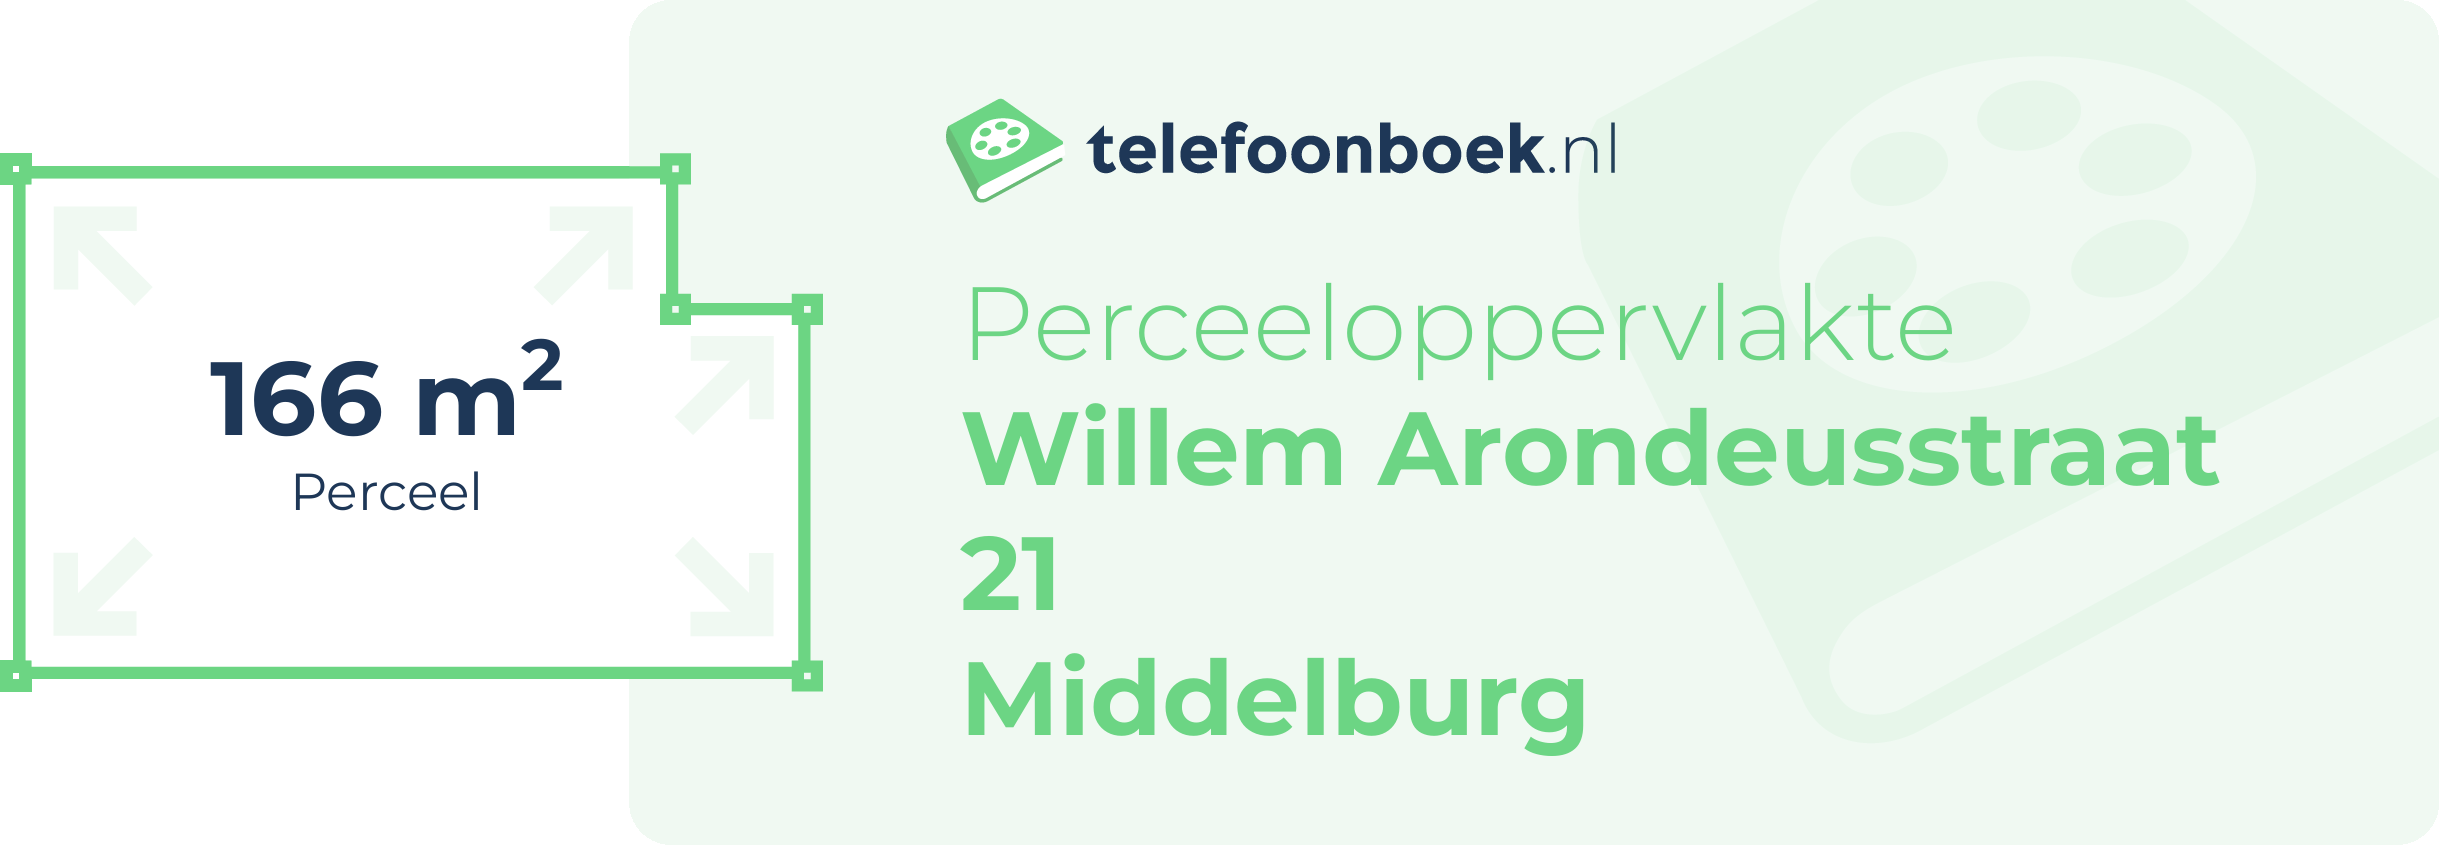 Perceeloppervlakte Willem Arondeusstraat 21 Middelburg